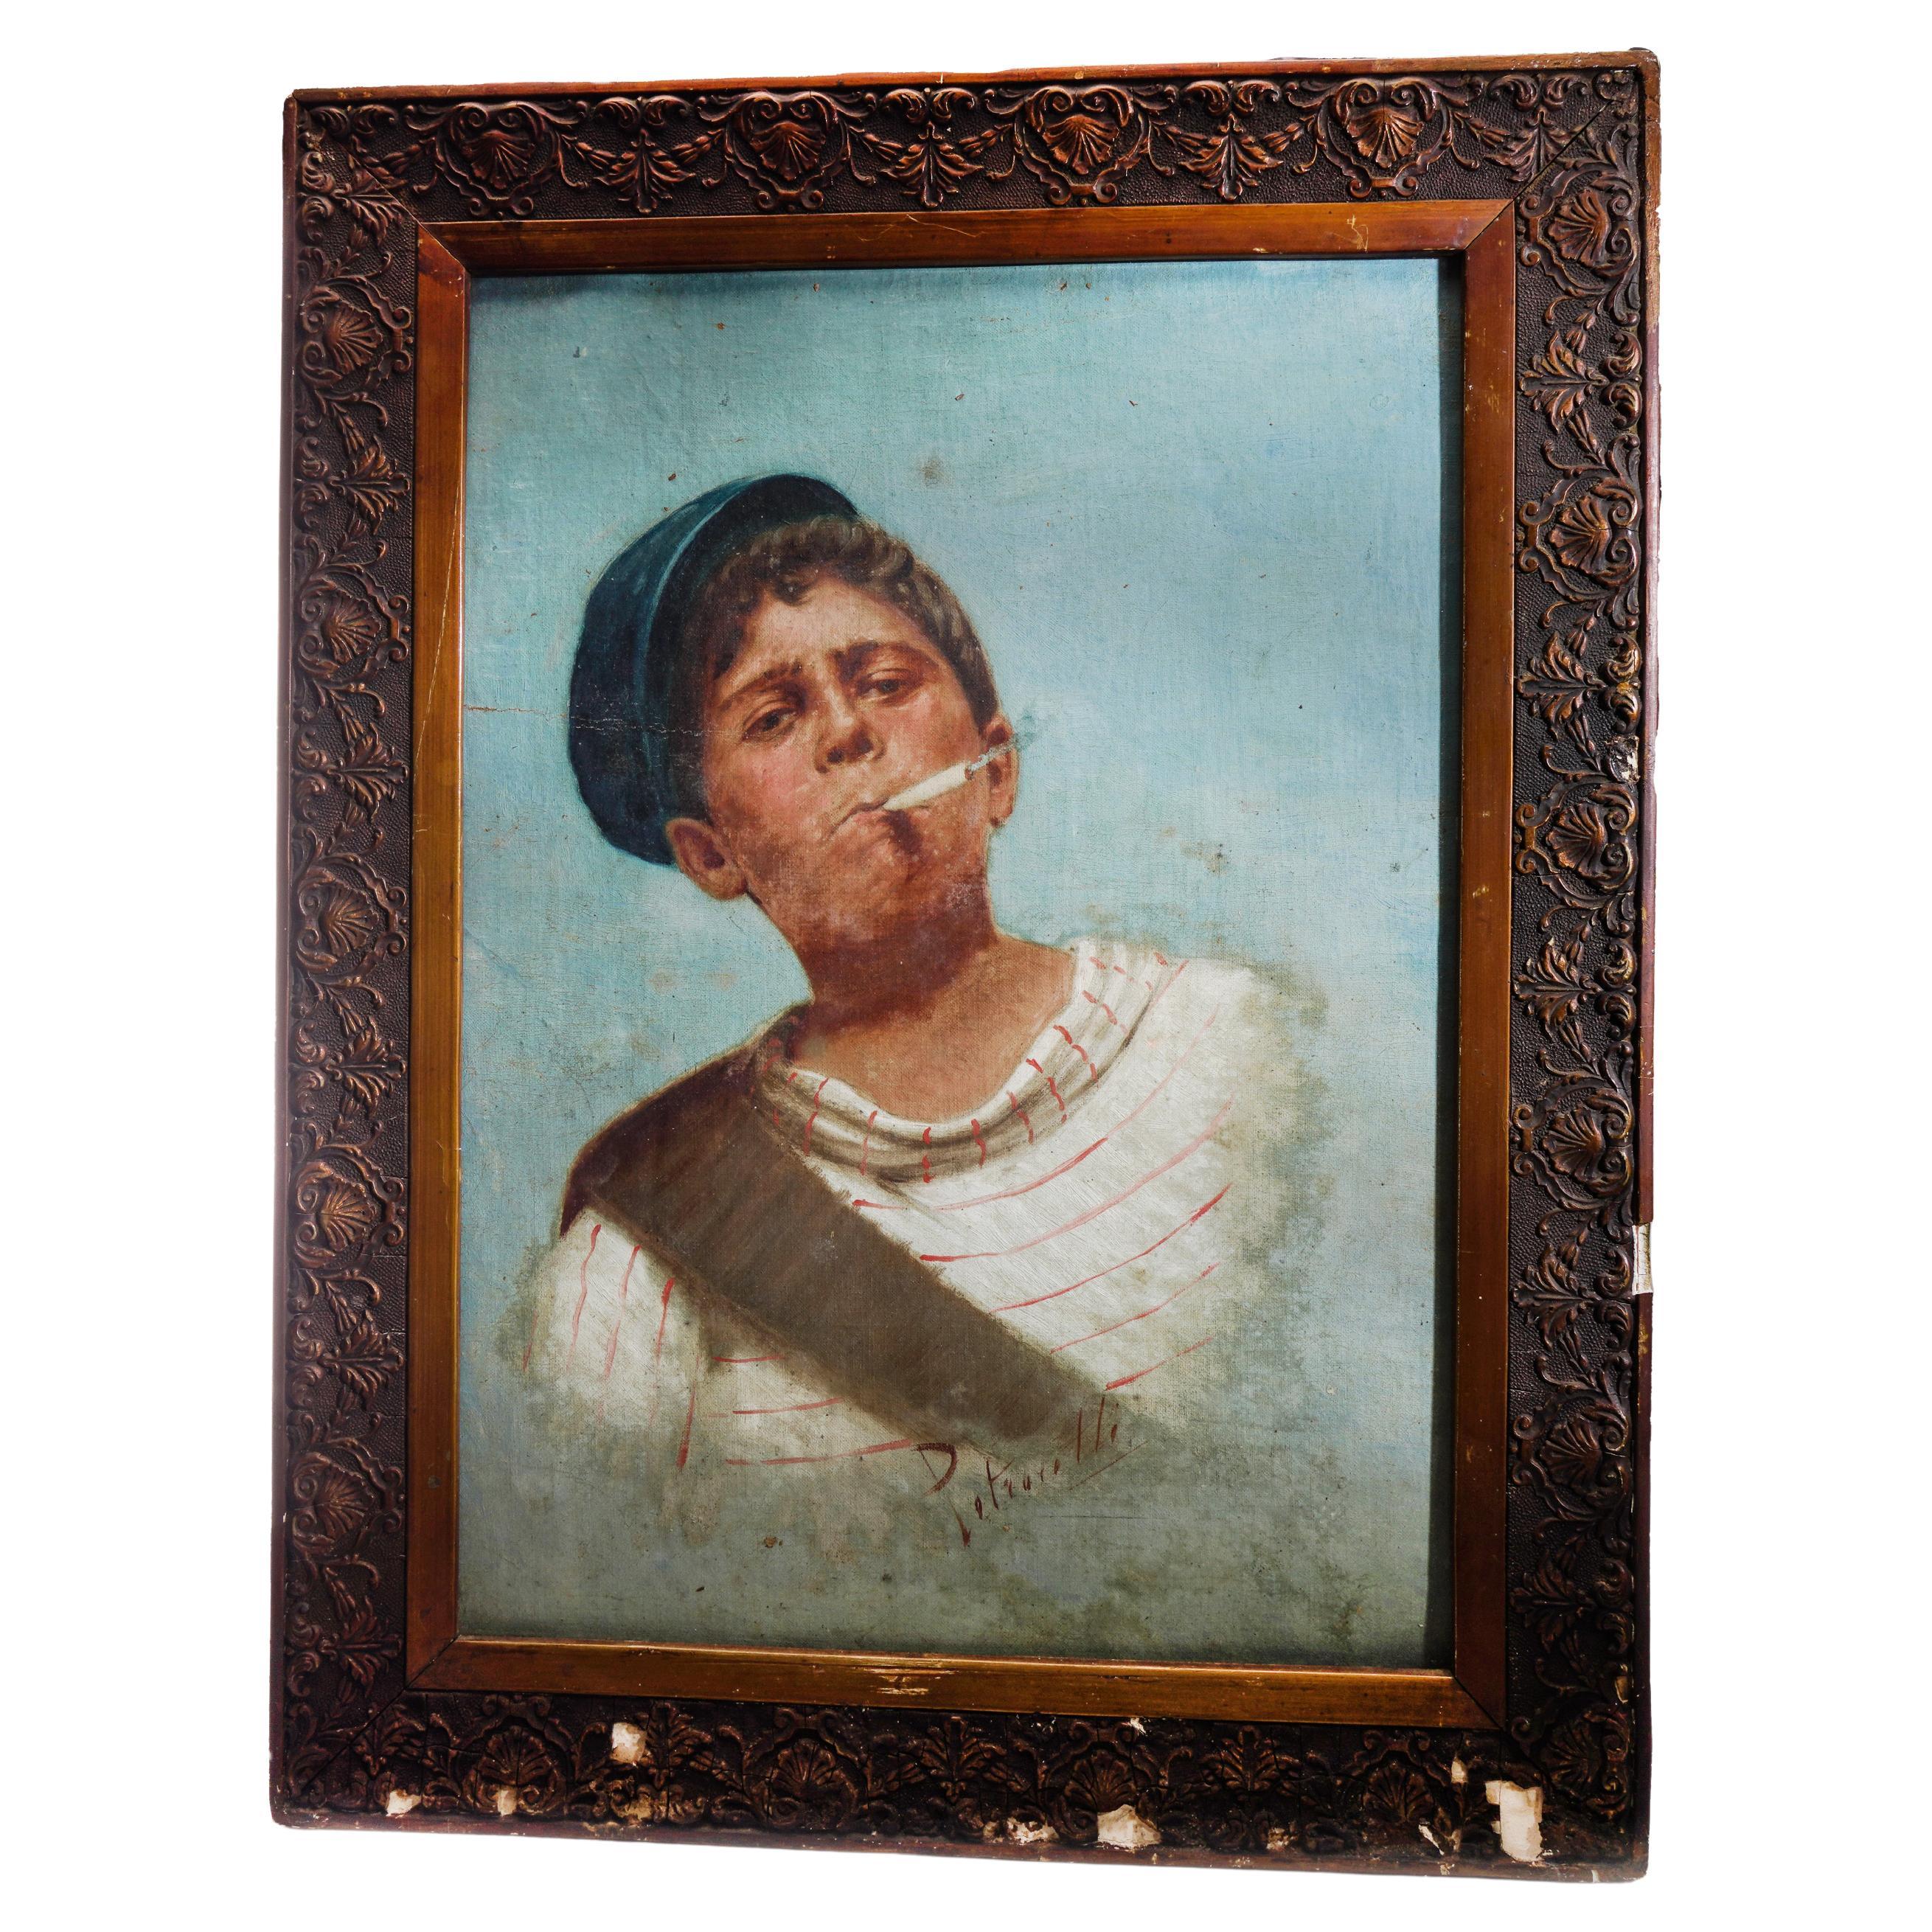 Arturo Petrocelli, a Young Neapolitan Boy with Cigarette, circa 1880s